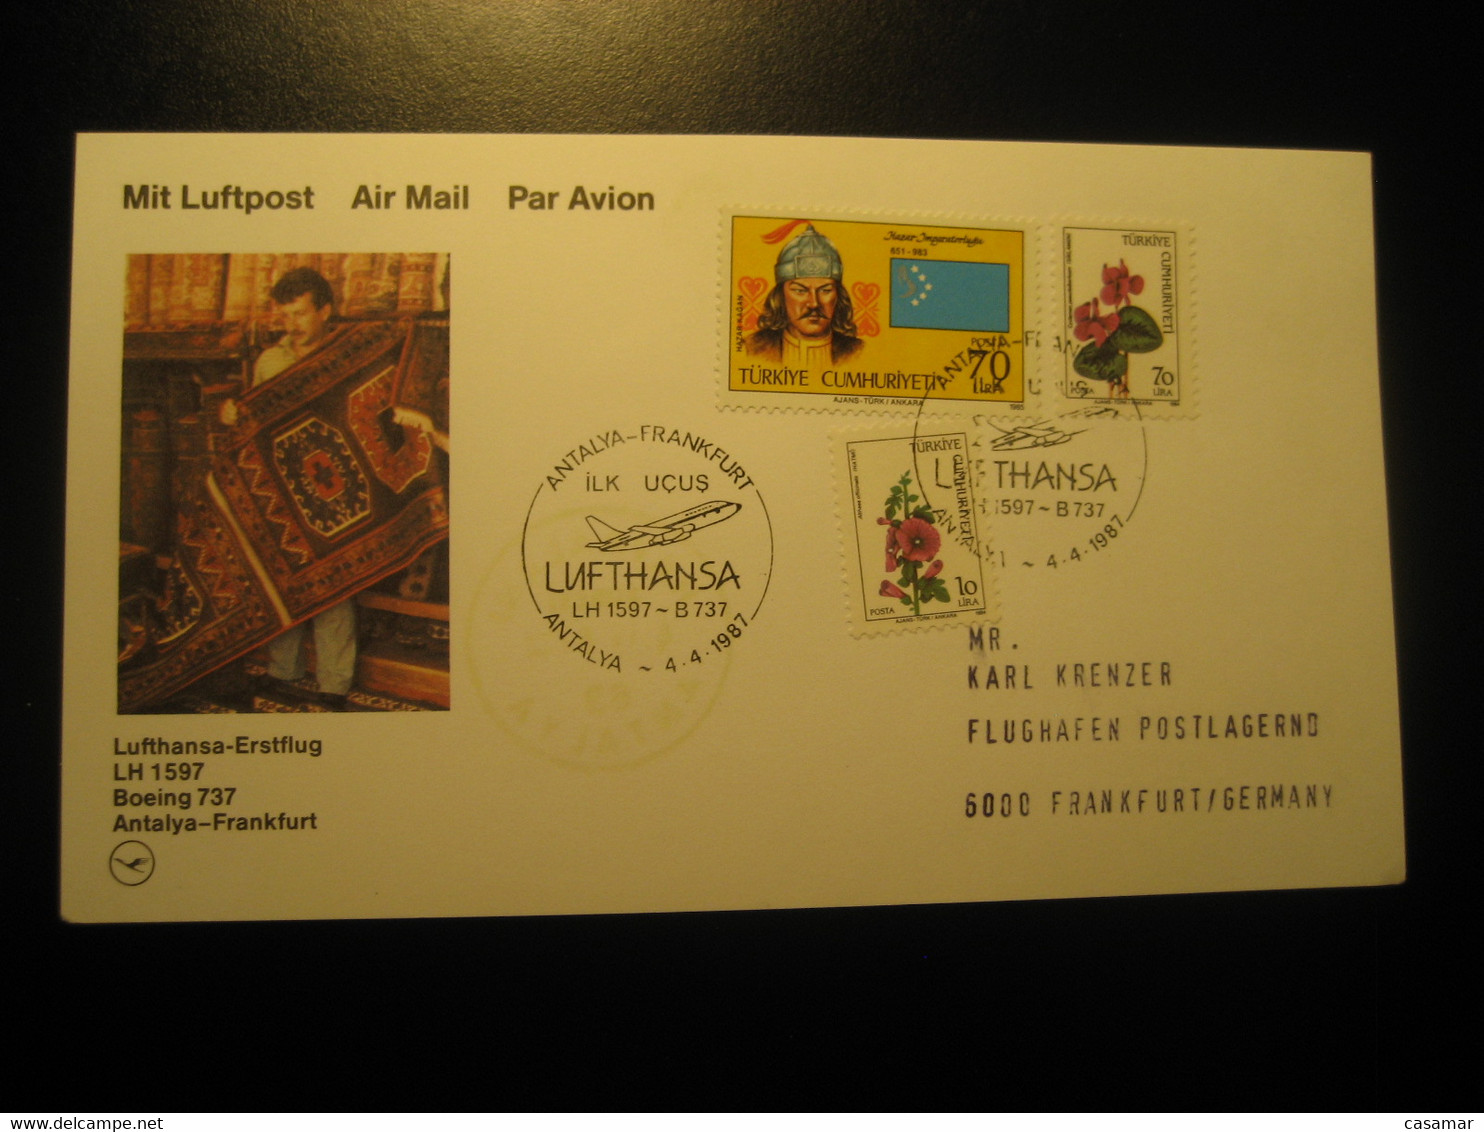 Antalya Frankfurt 1987 Lufthansa Airline Boeing 737 First Flight 3 Stamp Cancel Card Turkey Germany - Luftpost